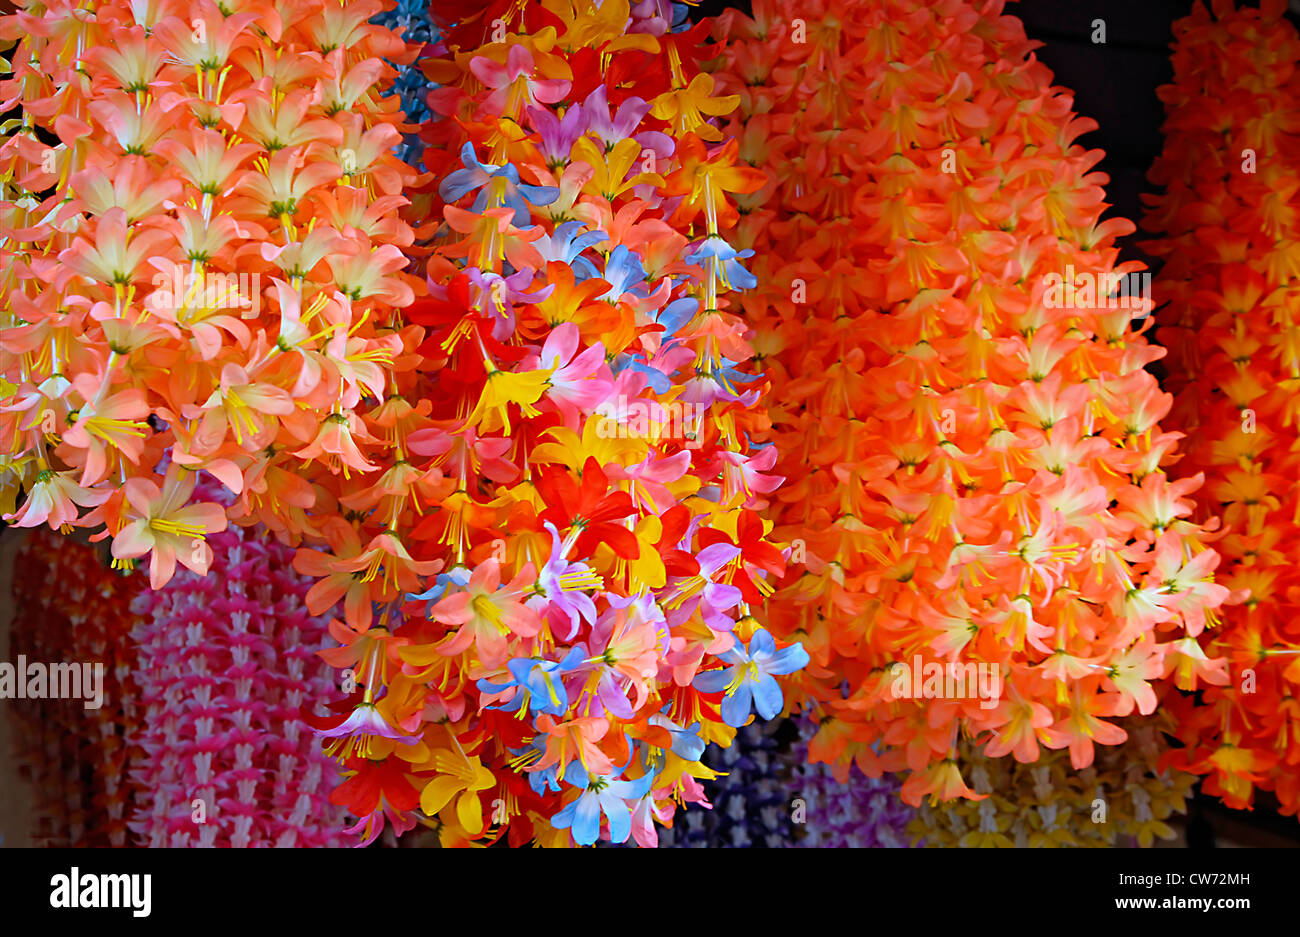 Décoration fleur indien typique faite de fleurs en plastique et dans toutes sortes de couleurs. Les fleurs sont habituellement utilisés pour des offrandes de fleurs dans les temples hindous, en Inde Banque D'Images